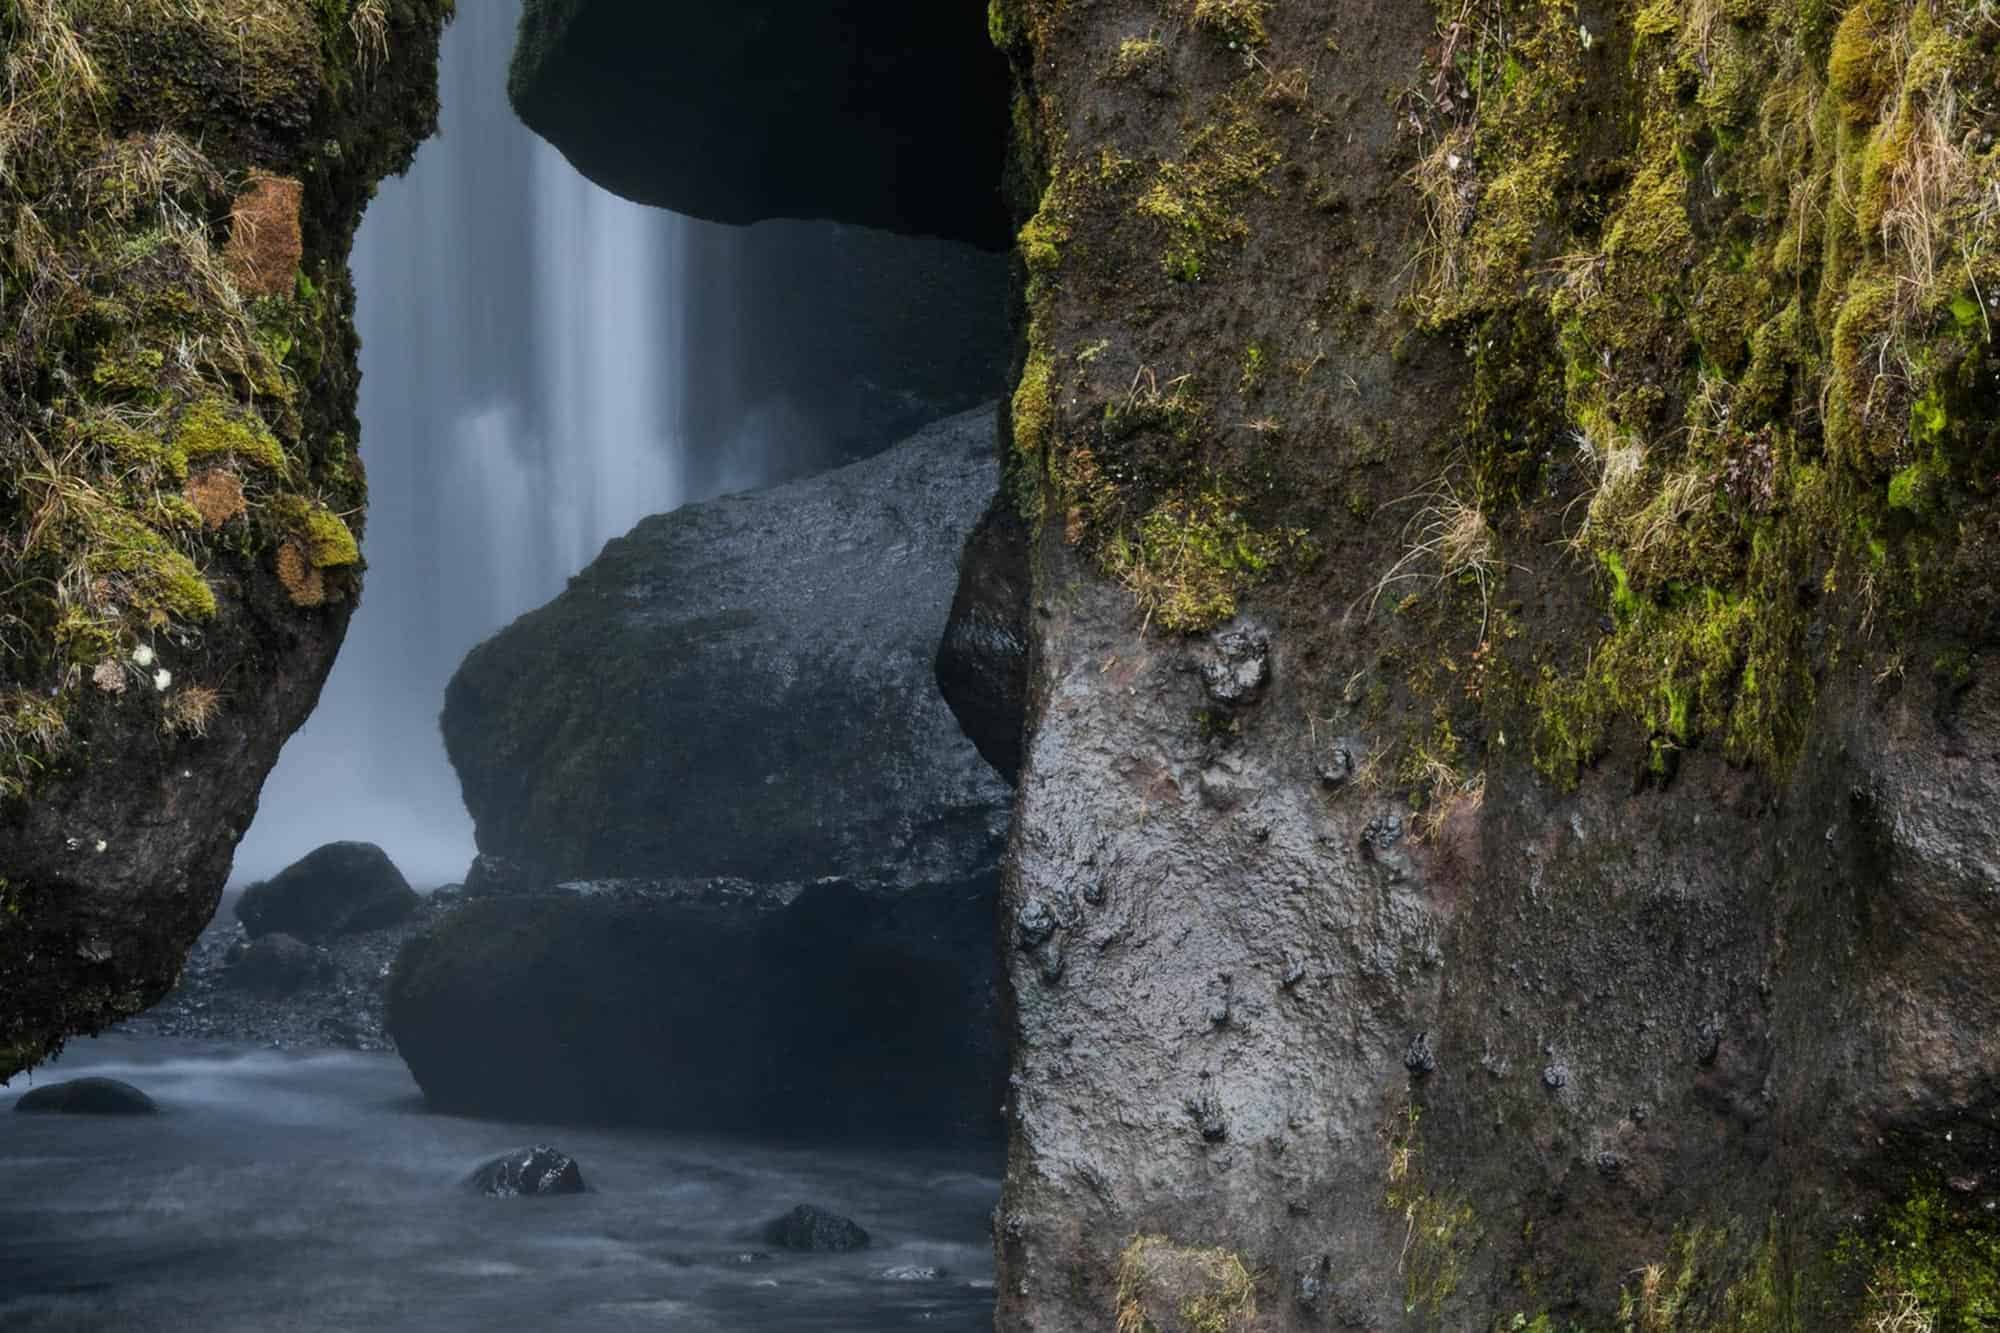 Gljúfrabúi waterfall hidden behind cliff rock in south Iceland.